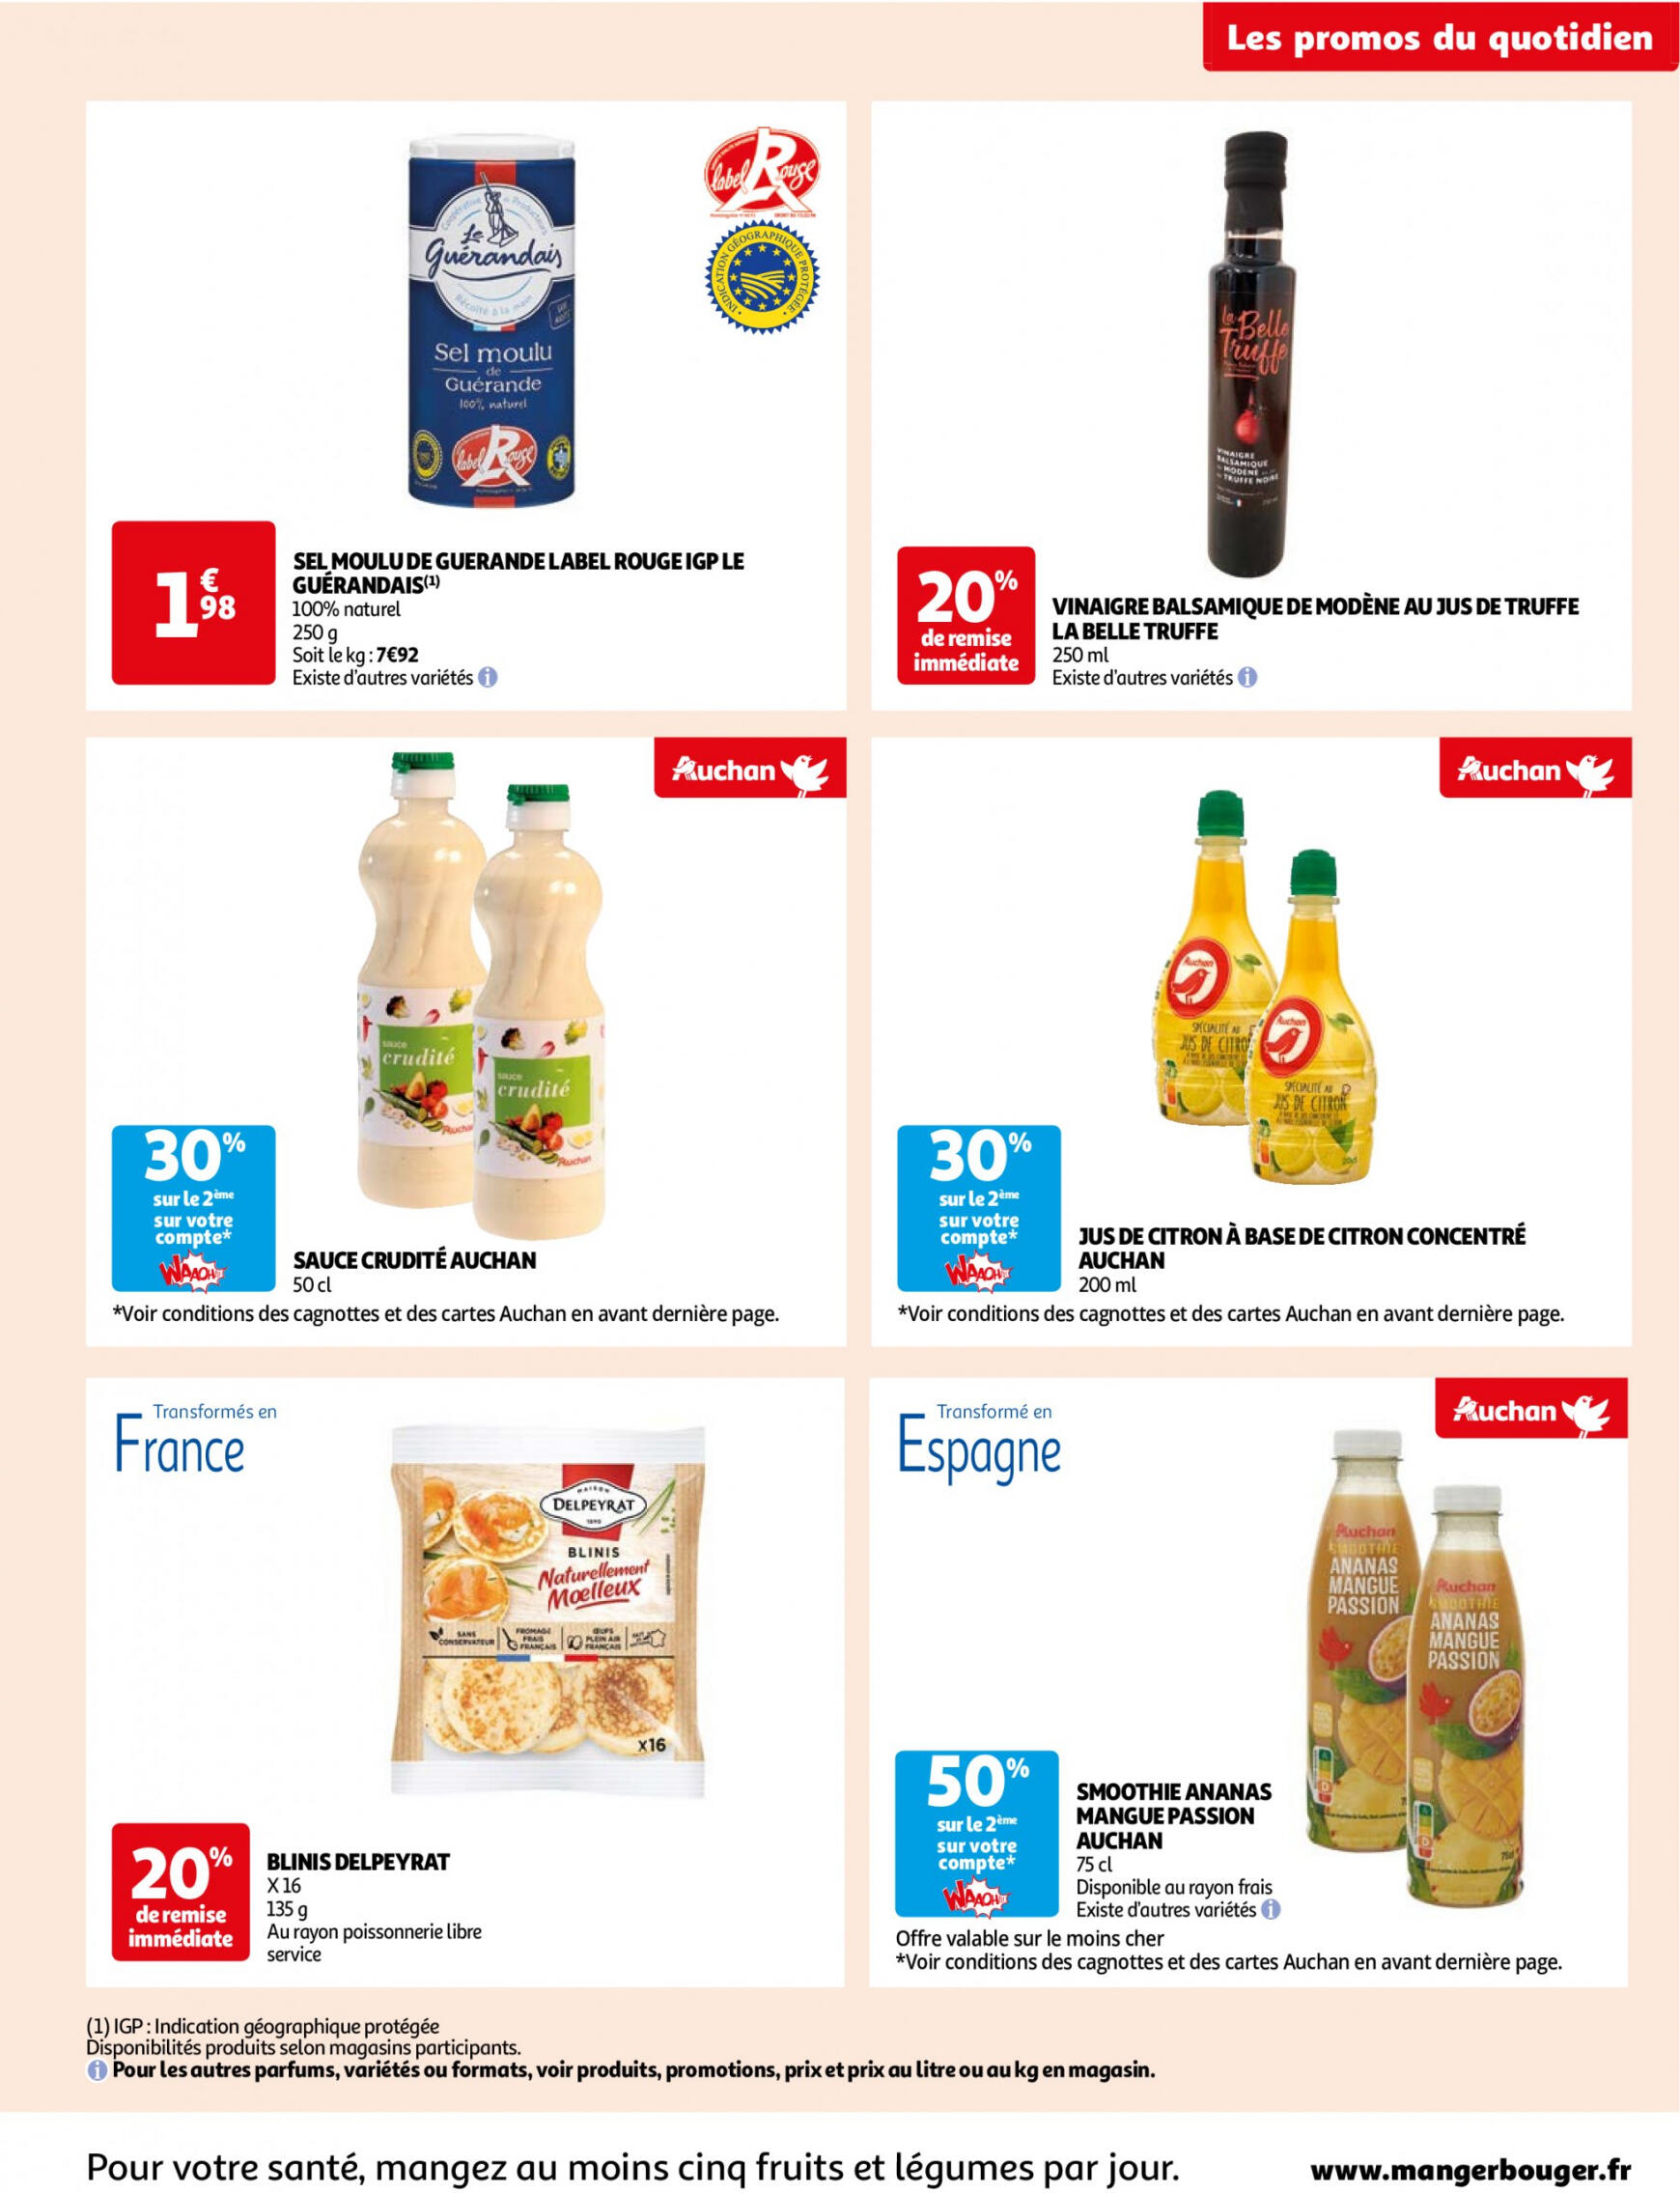 auchan - Auchan - Des économies au quotidien folder huidig 14.05. - 03.06. - page: 9